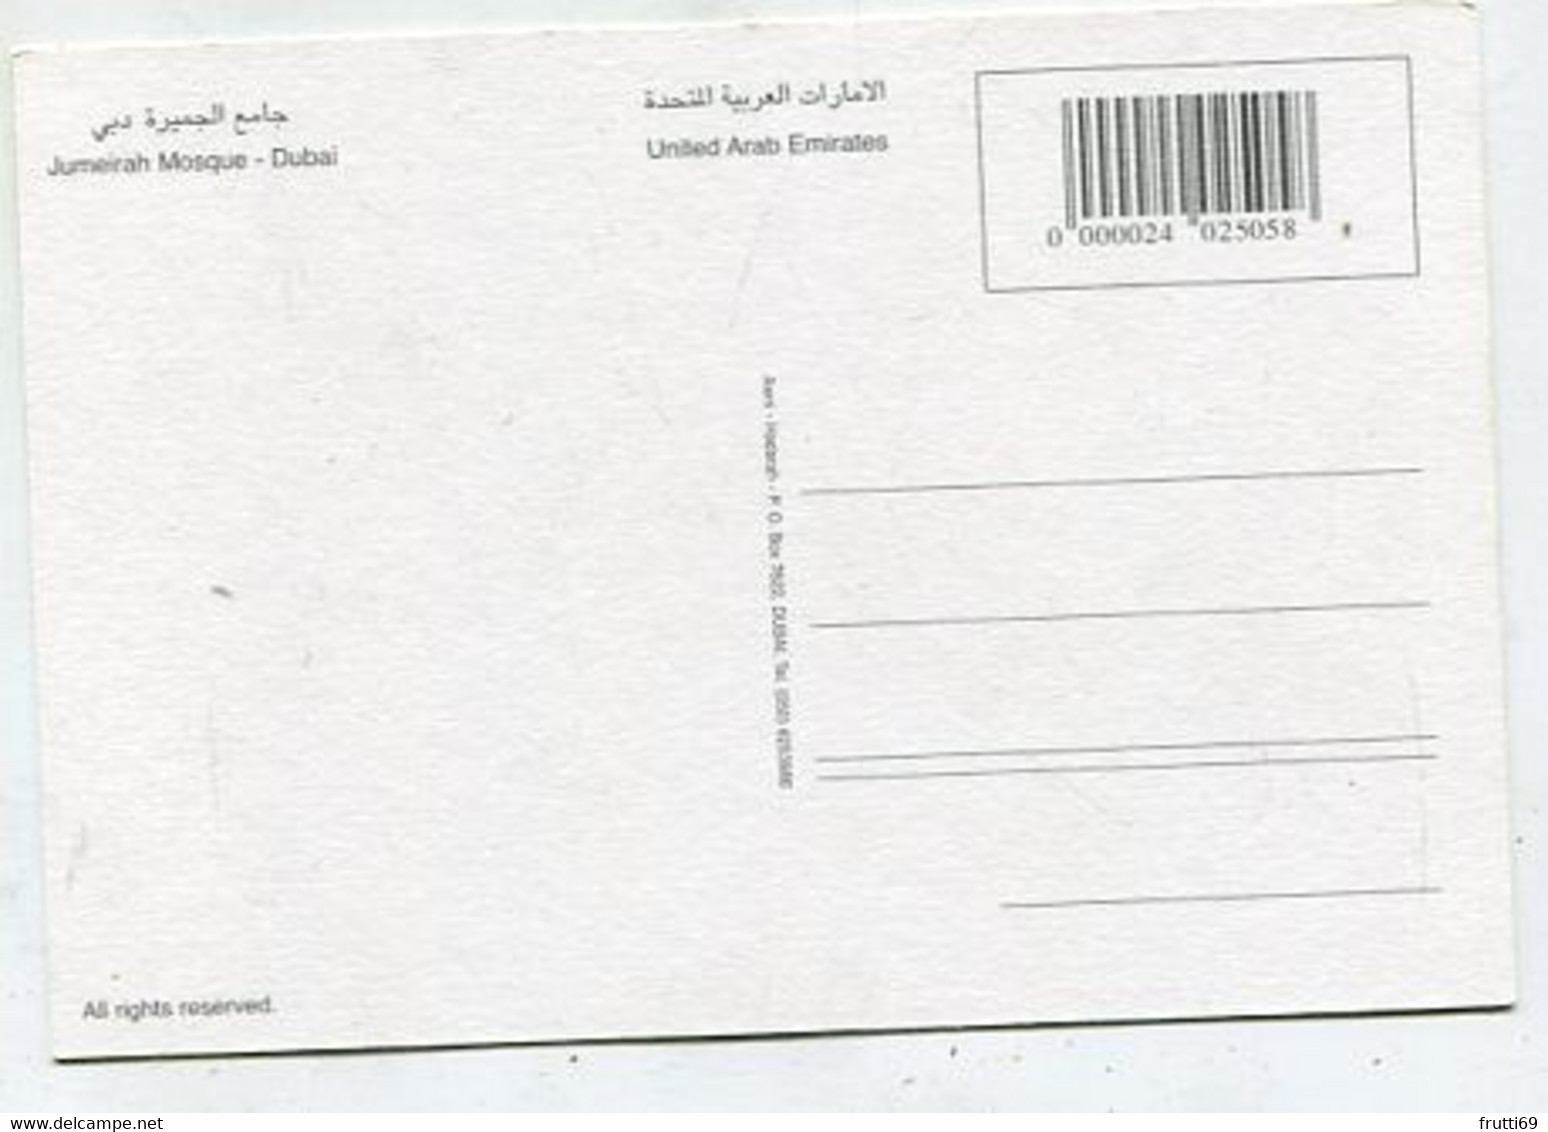 AK 116220 UNITED ARAB EMIRATES - Dubai - Jumeirah Mosque - Emirats Arabes Unis